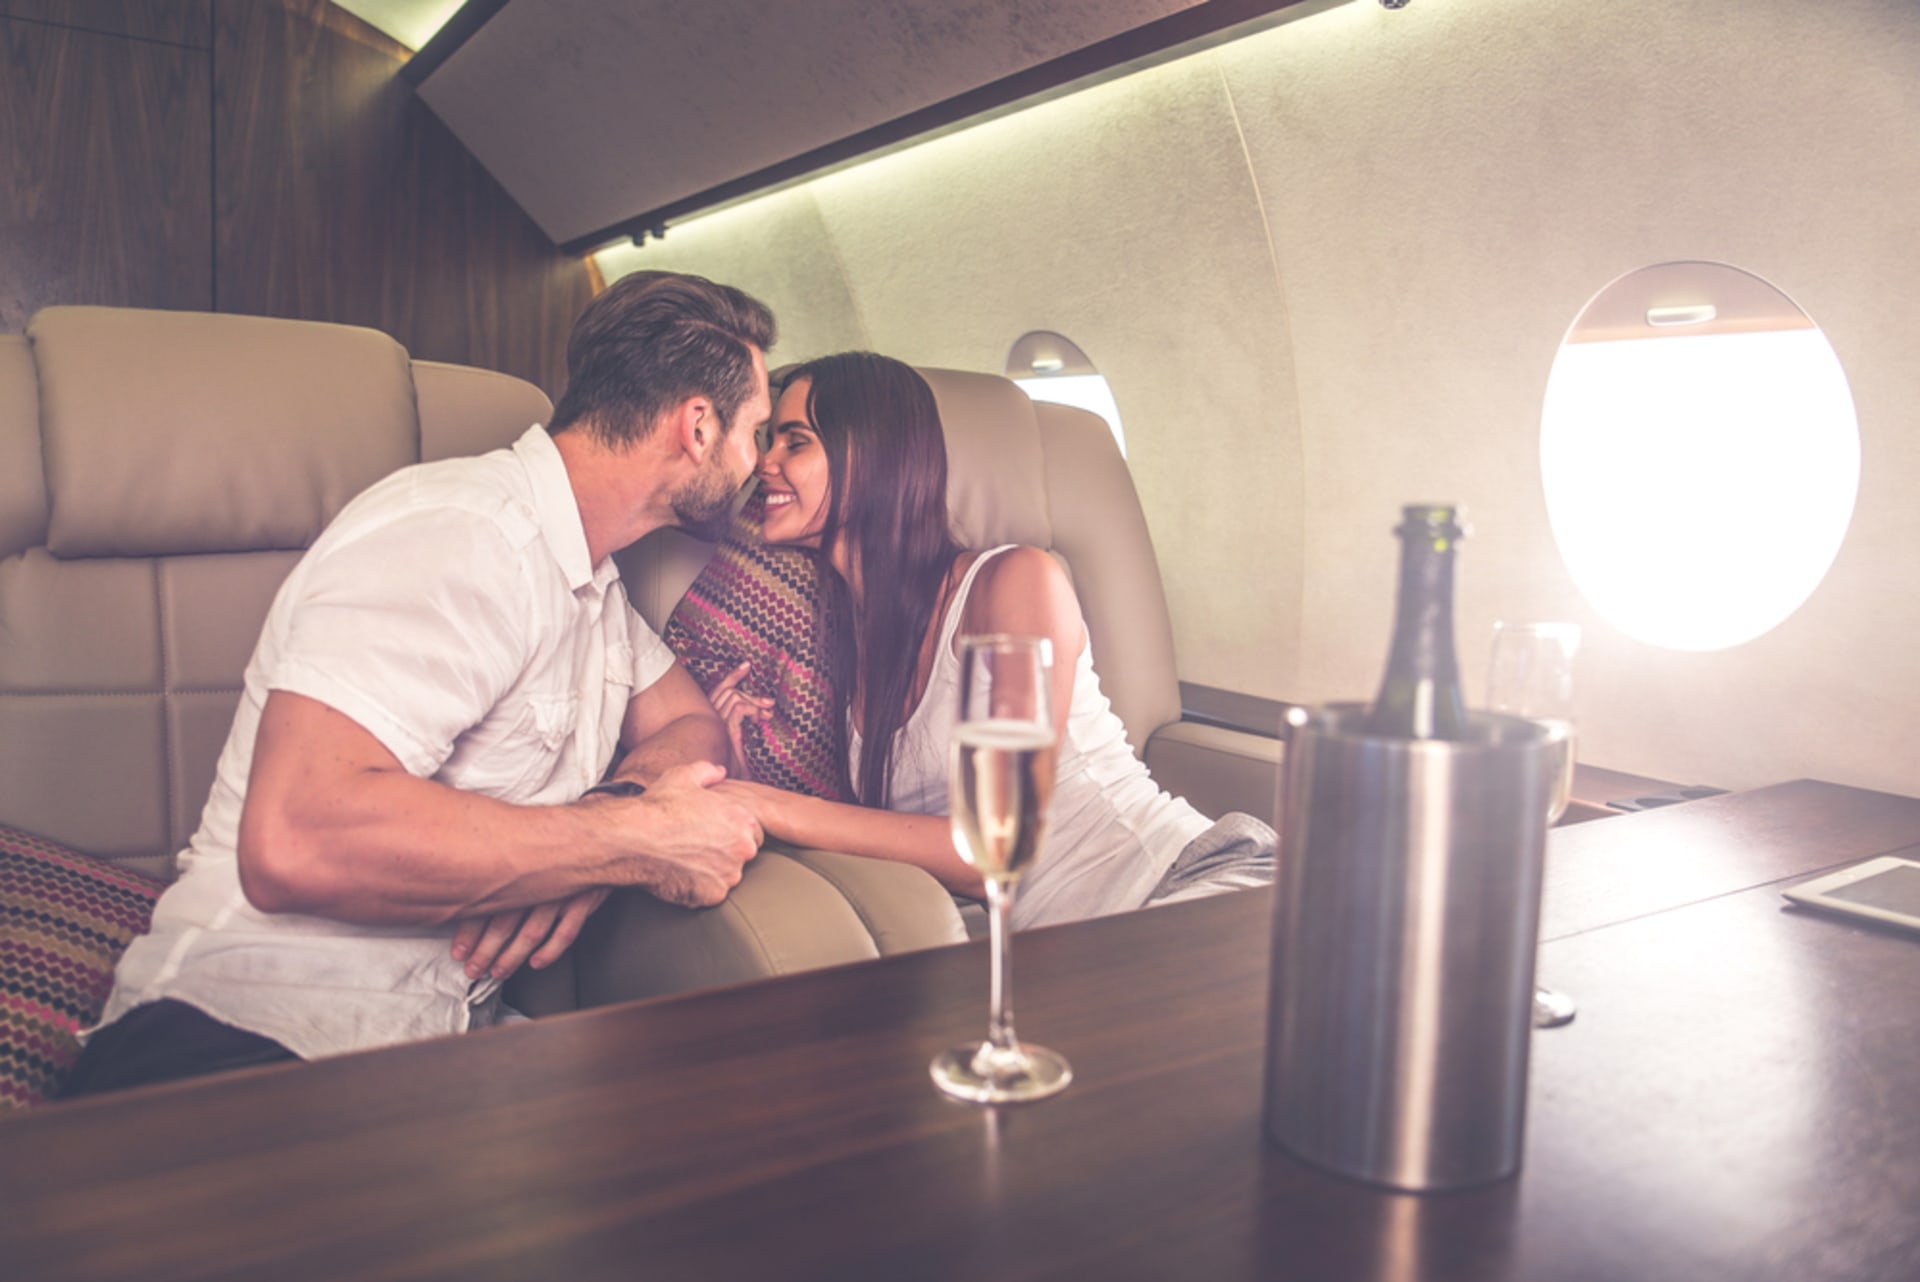 Sex v letadle za poplatek nabízí jedna soukromá letecká společnost. (ilustrační foto)